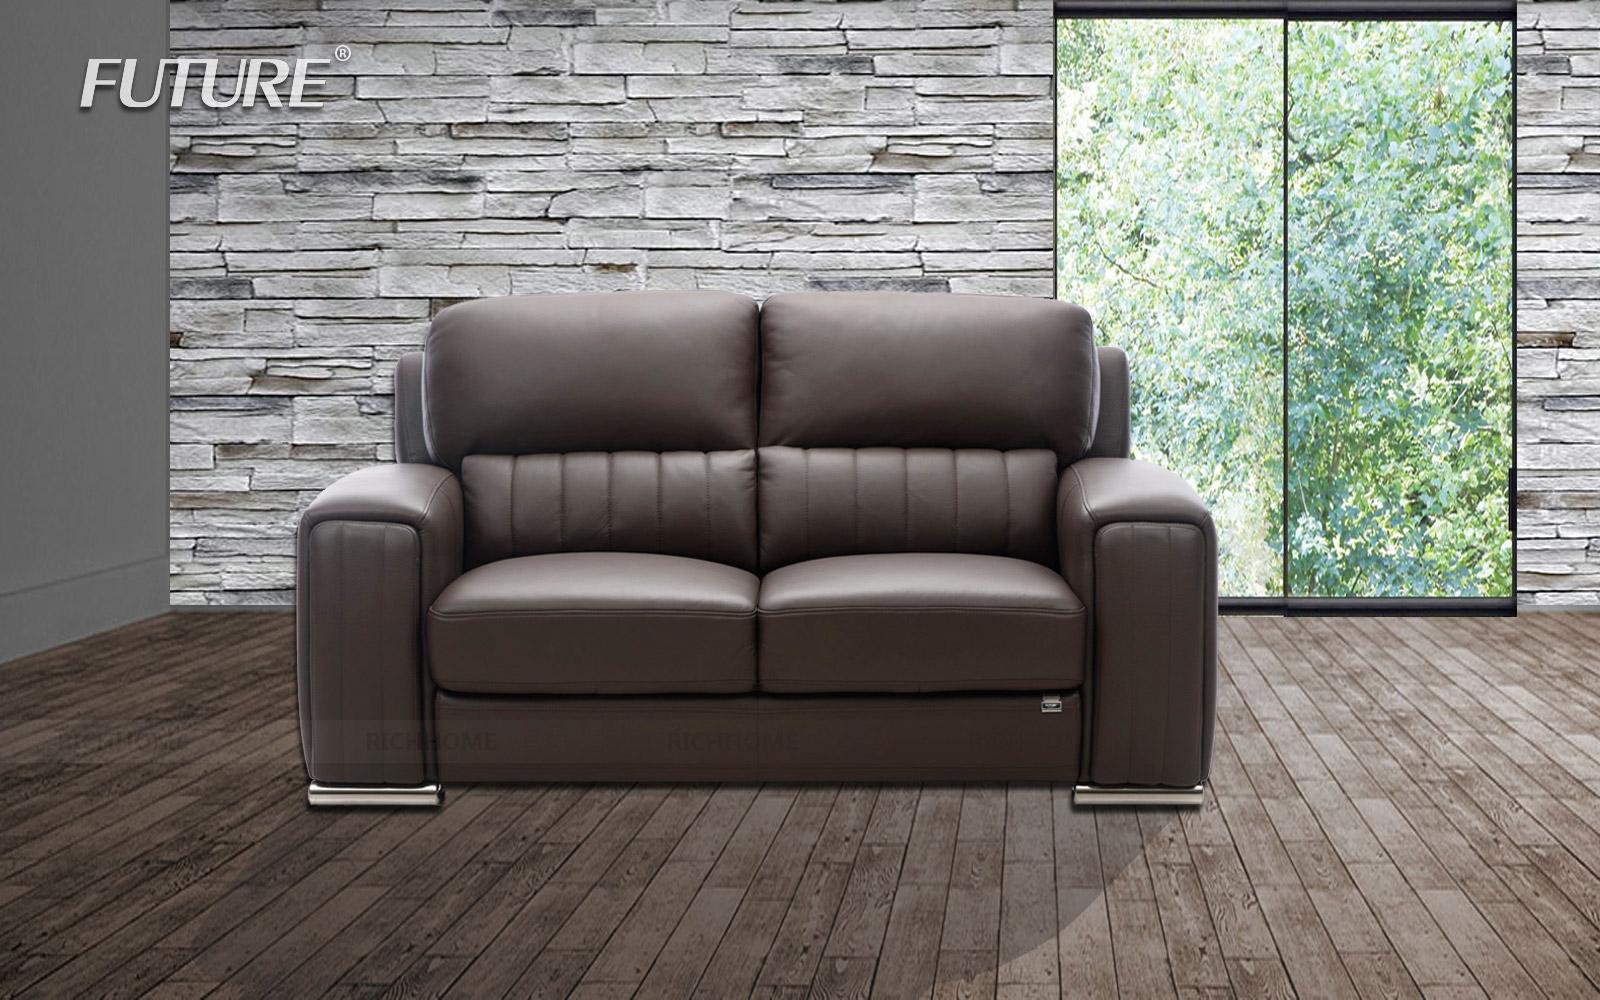 Những mẫu sofa da hiện đại cho phòng khách nhà bạn - Ảnh 6